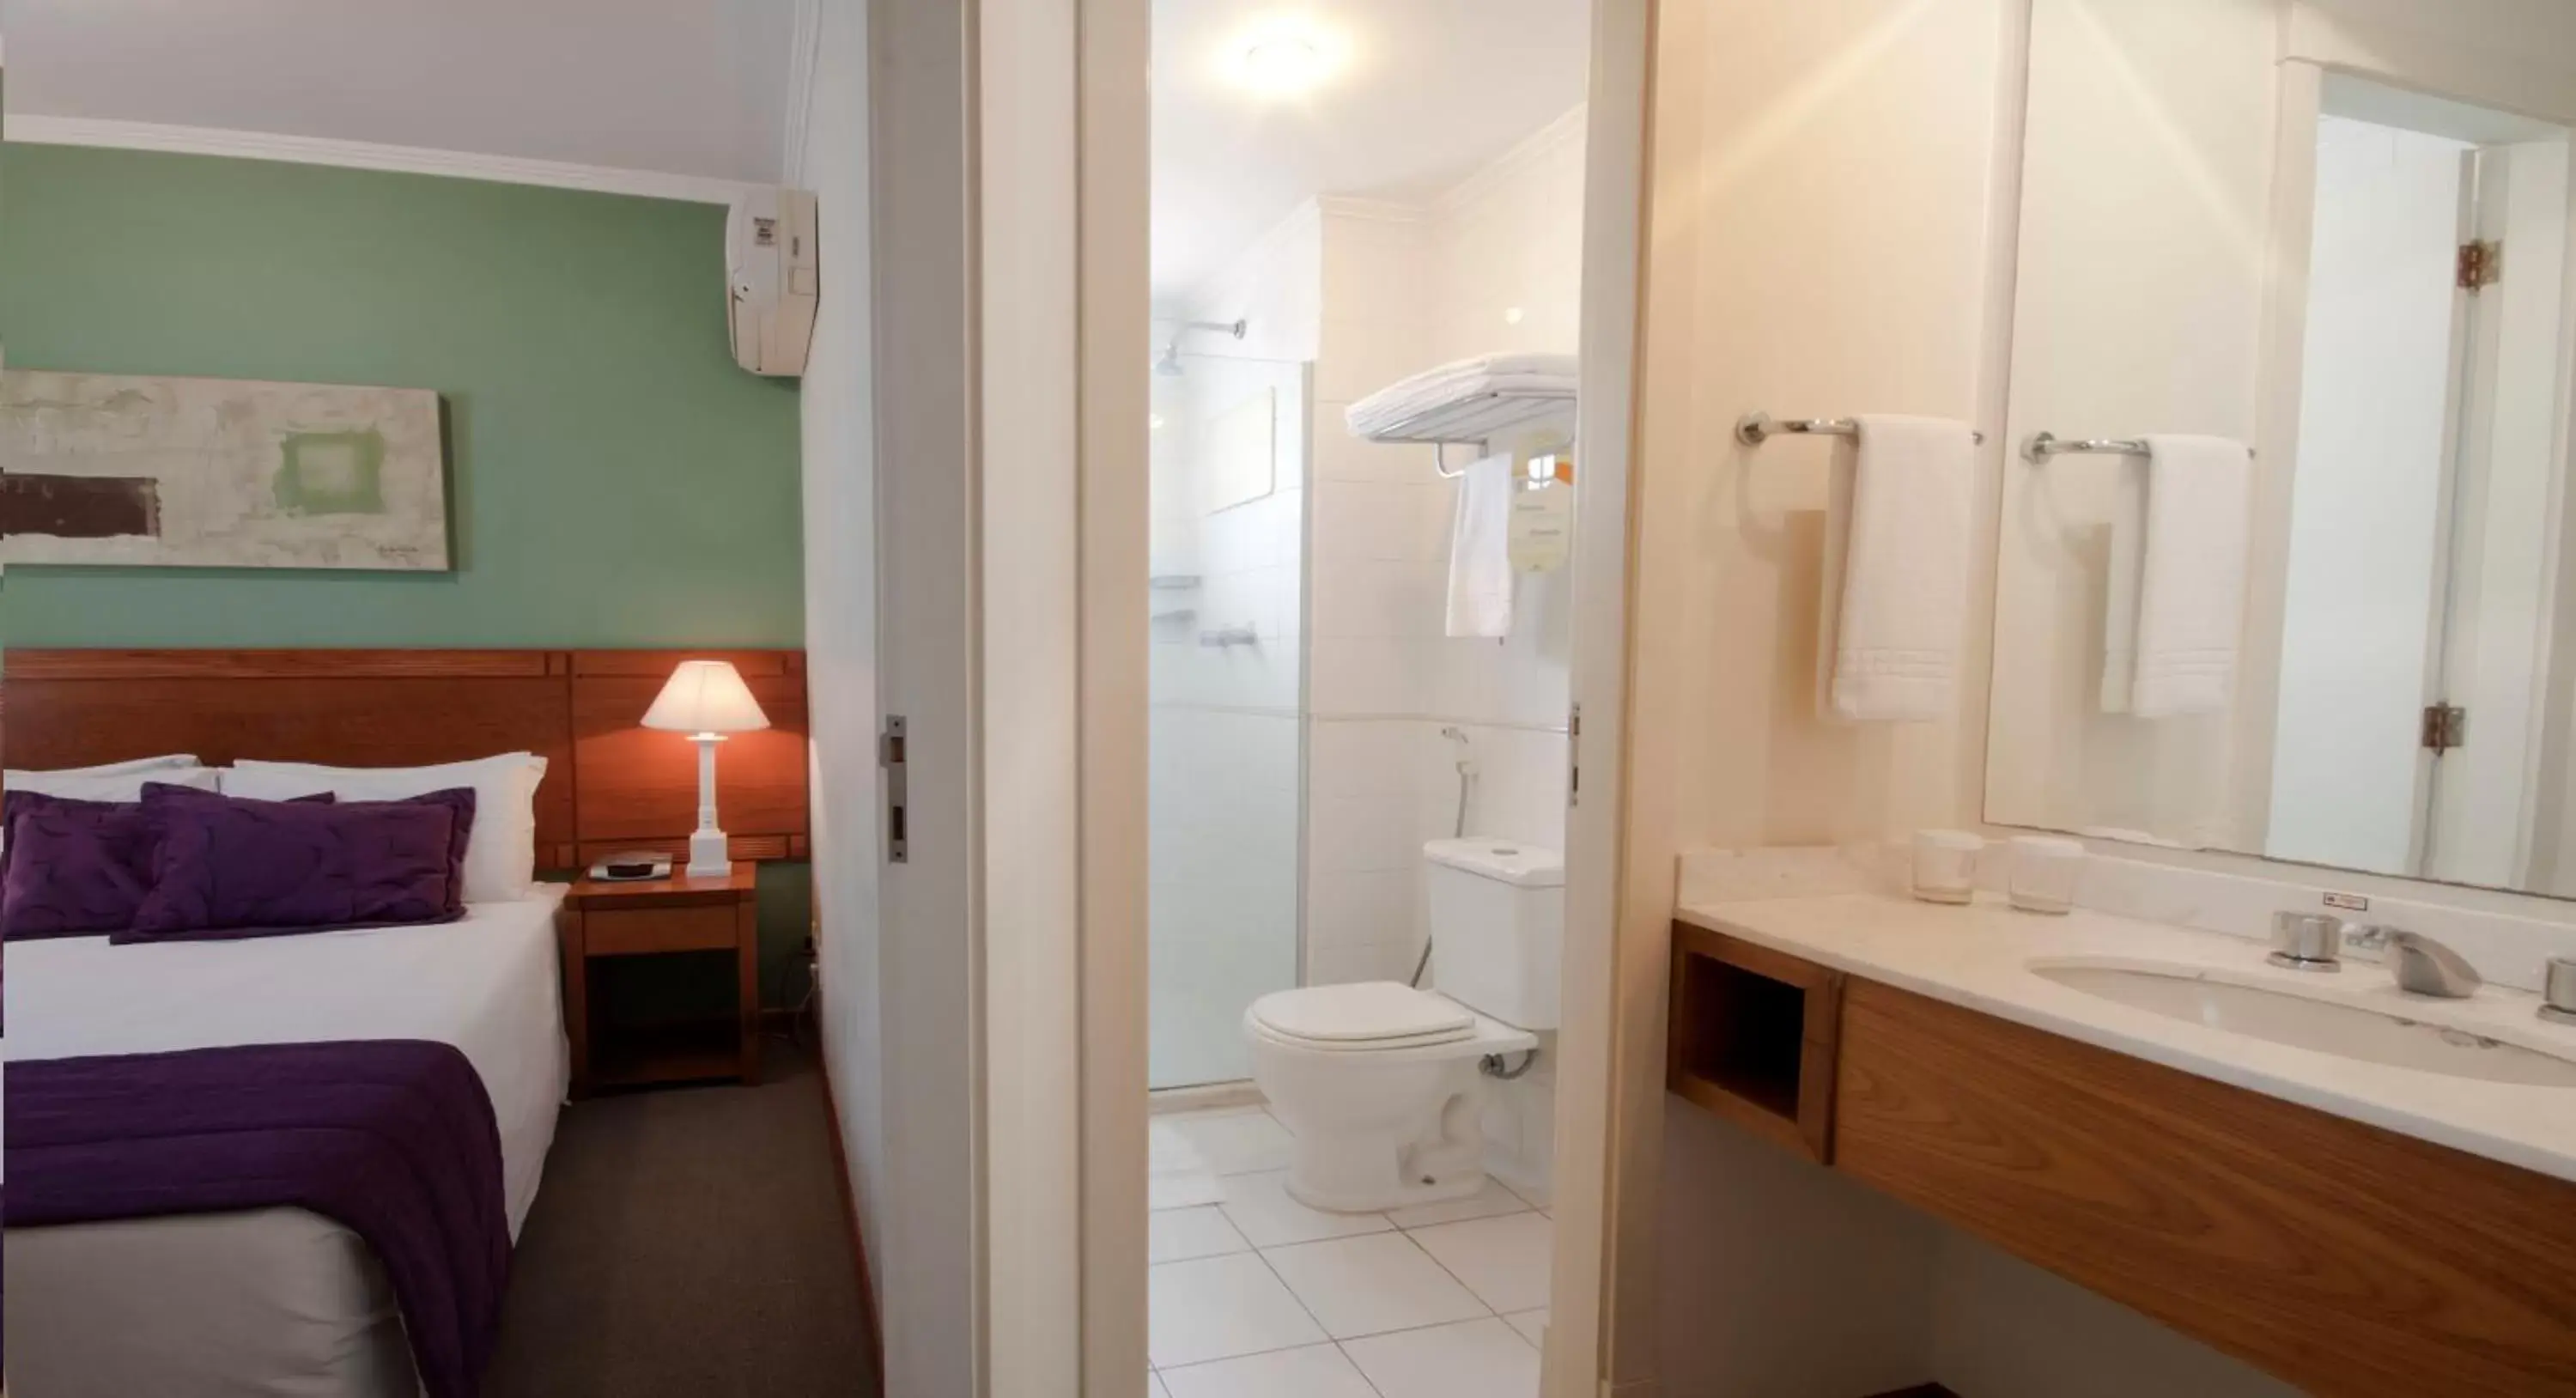 Bathroom in Quality Suites Vila Olimpia